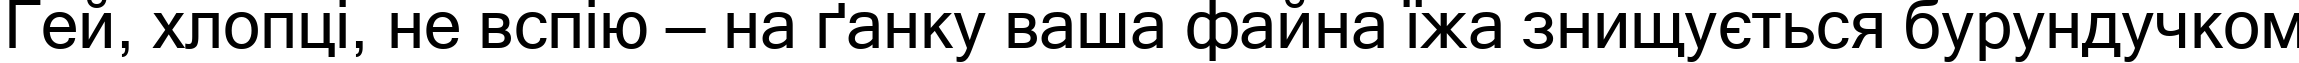 Пример написания шрифтом Microsoft Sans Serif текста на украинском